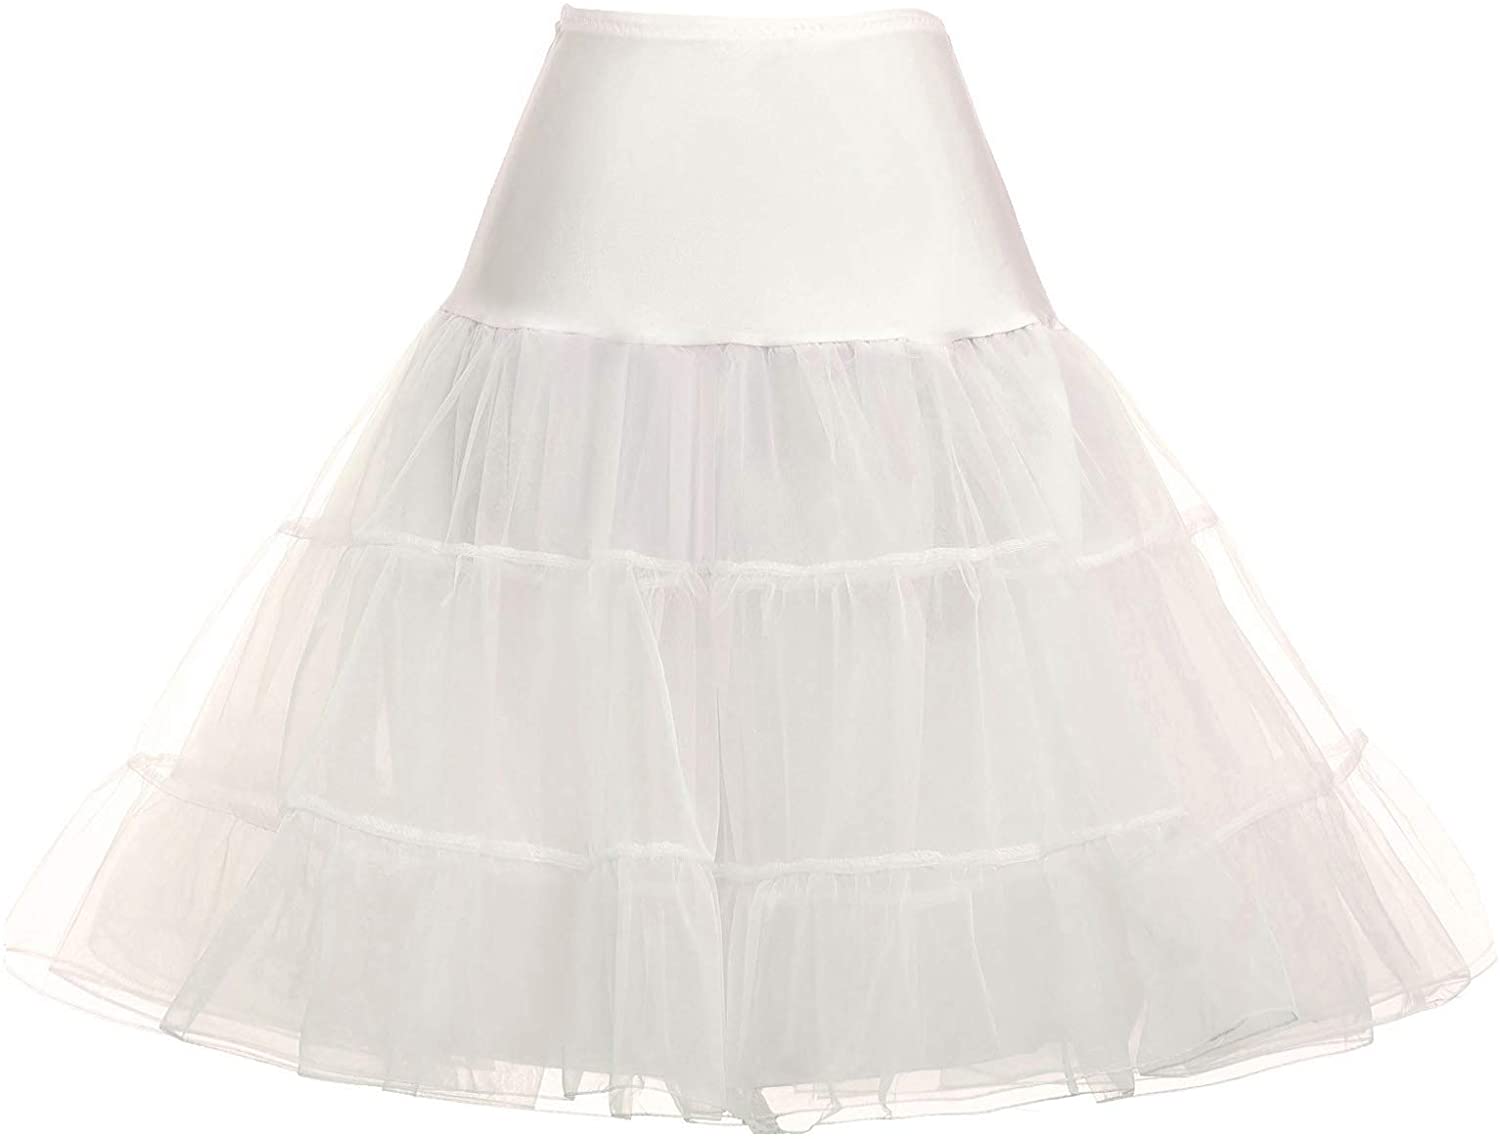 Tidetell Vintage Womens 50s Petticoat Crinoline Tutu Underskirt 26 FBA